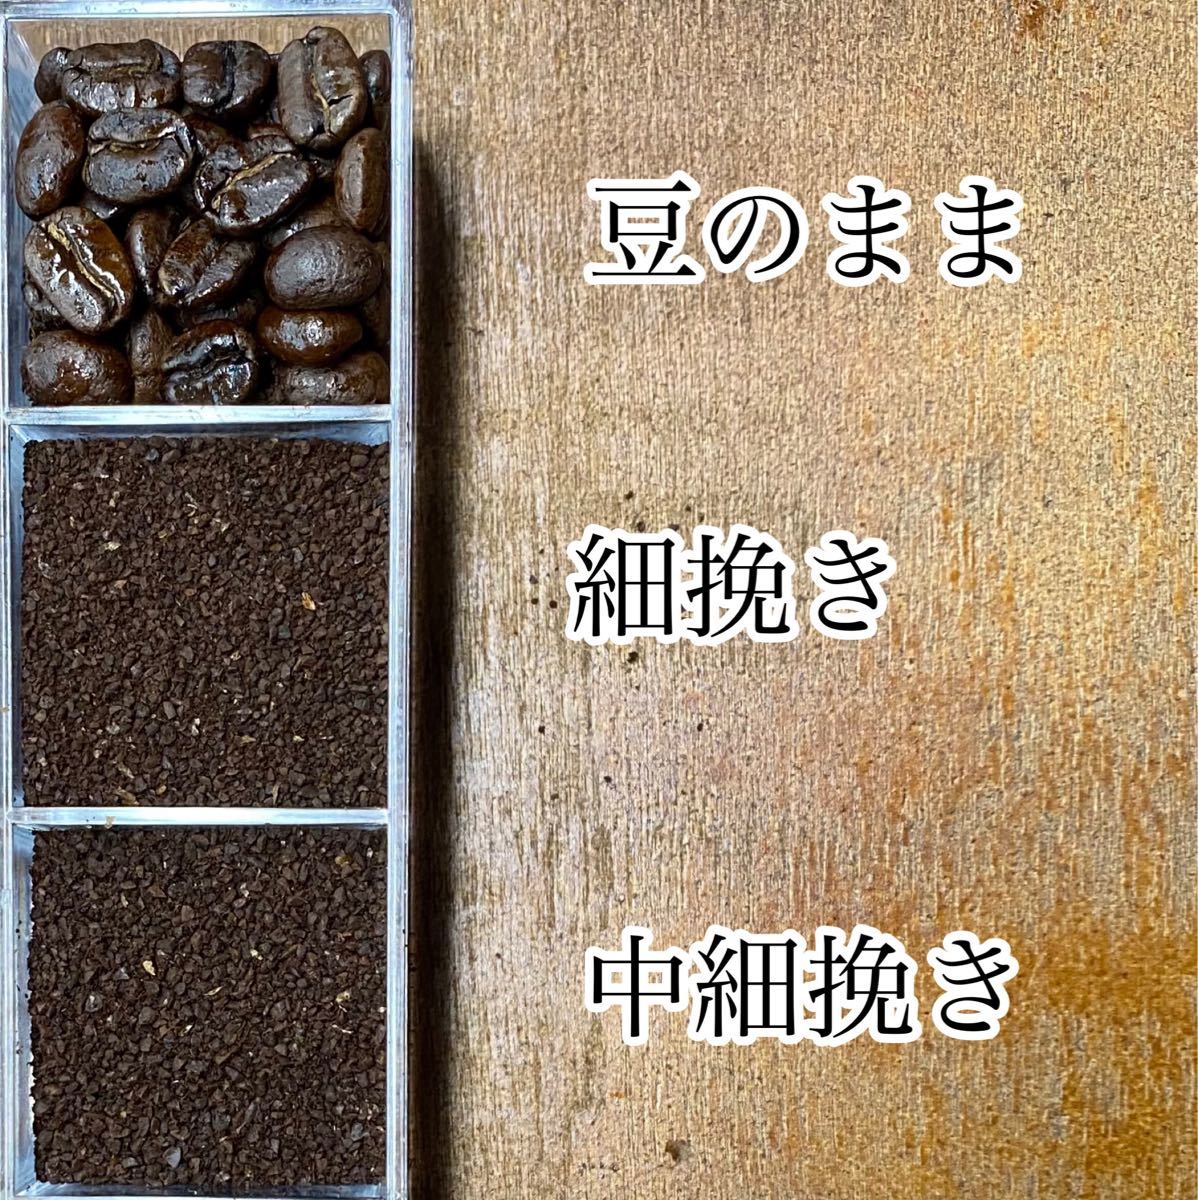 秋限定ブレンドセットB 自家焙煎コーヒー豆3種(100g×3個)